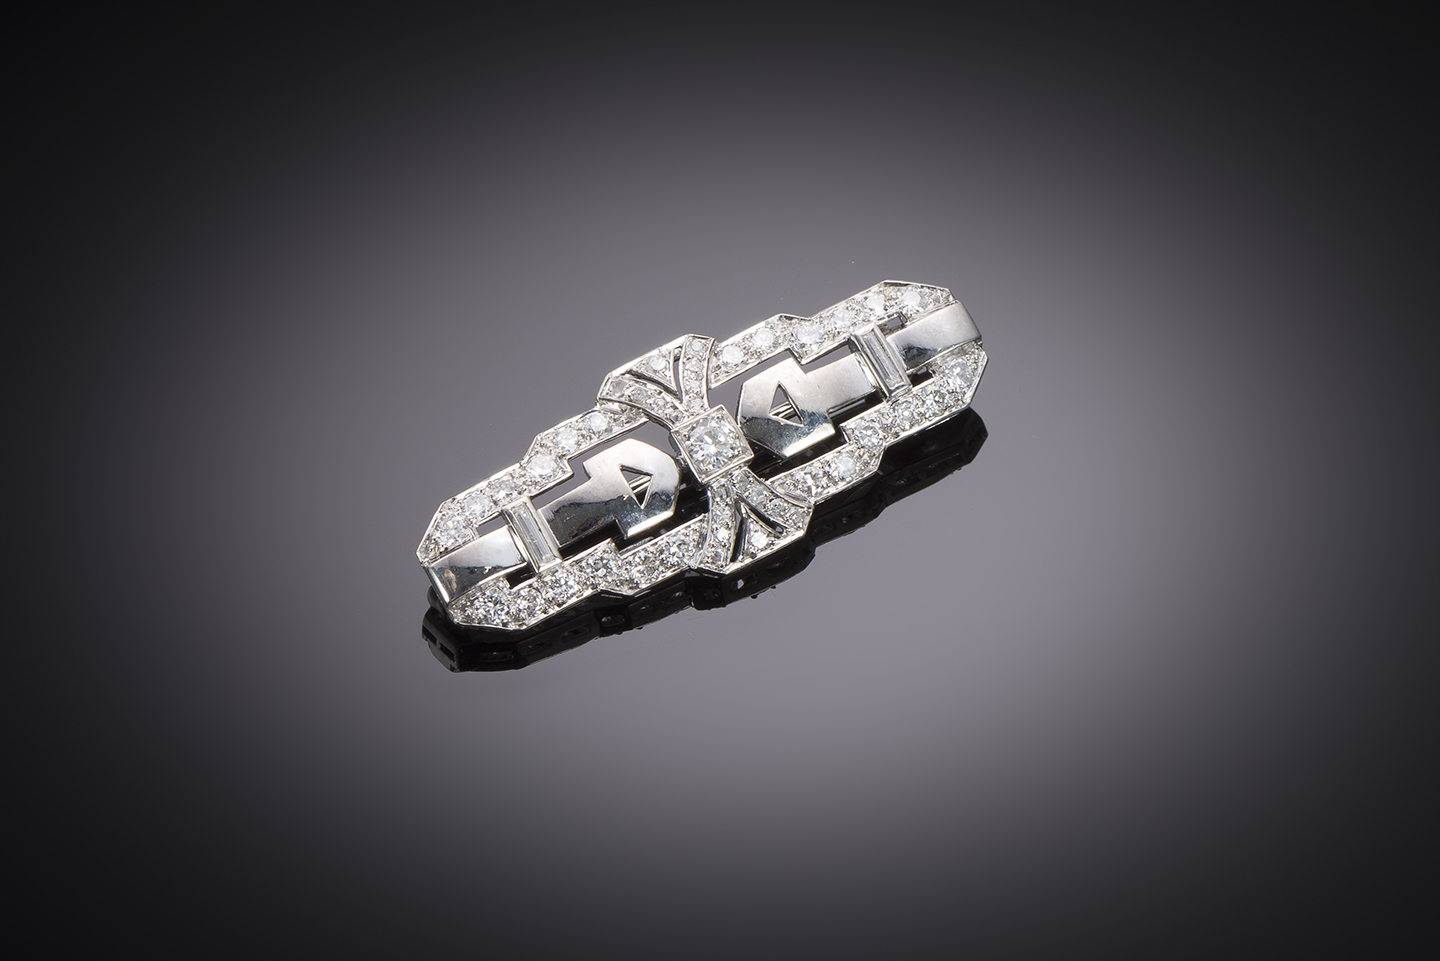 Broche Art déco diamants (environ 1 carat). Travail français vers 1930.-1